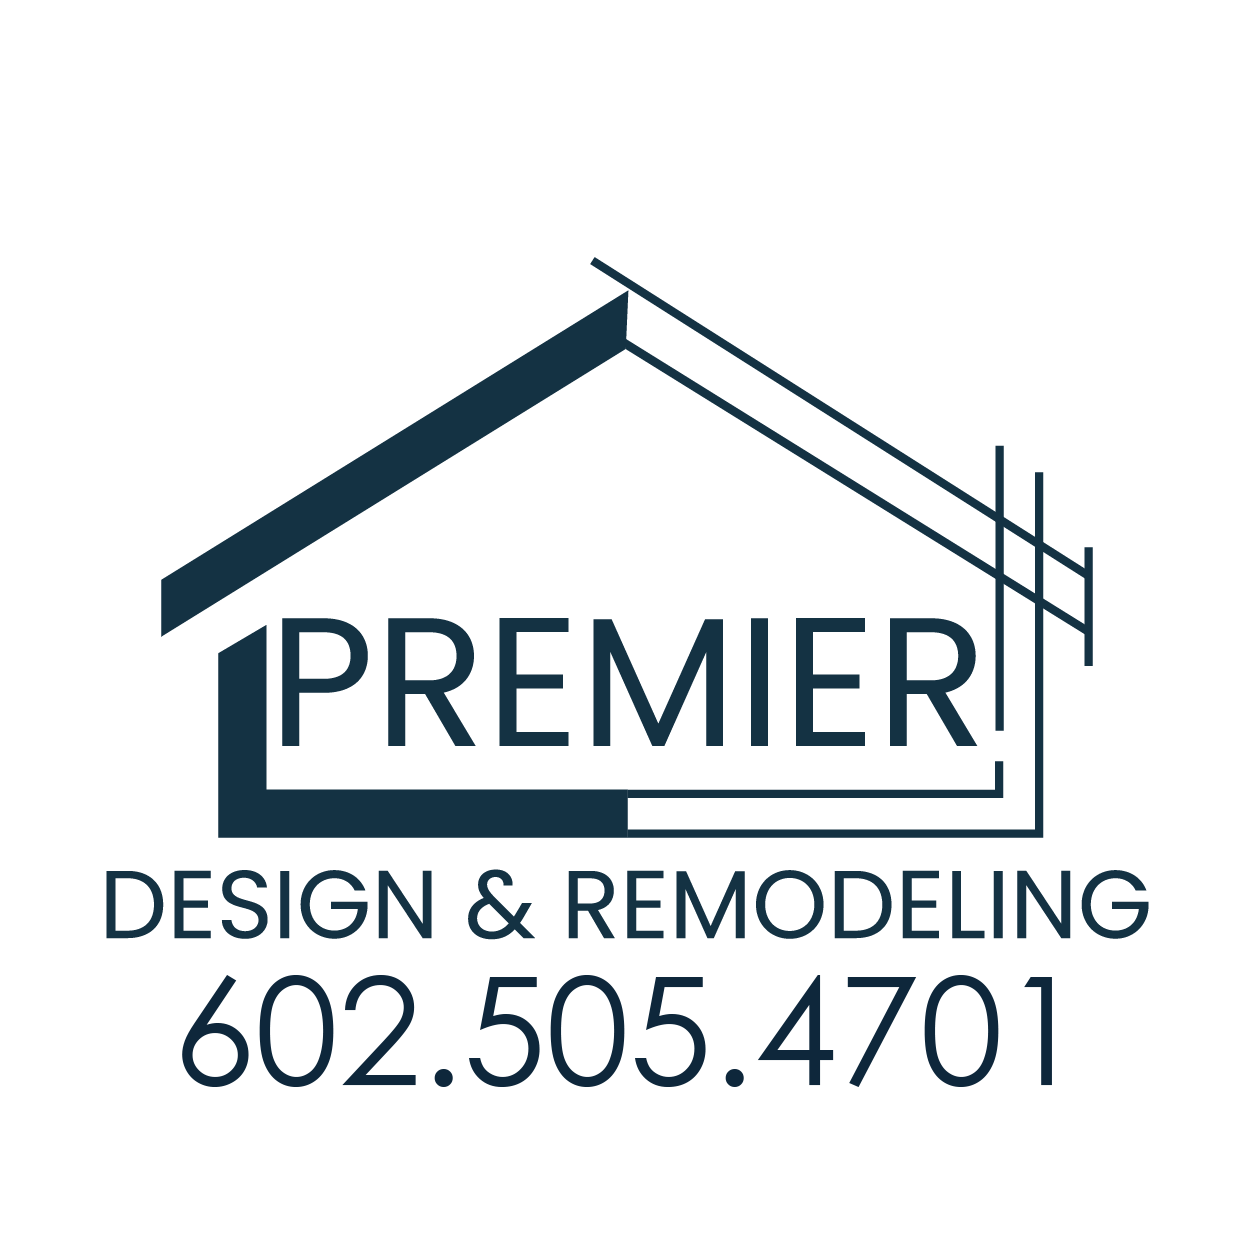 Premier Design & Remodeling, LLC